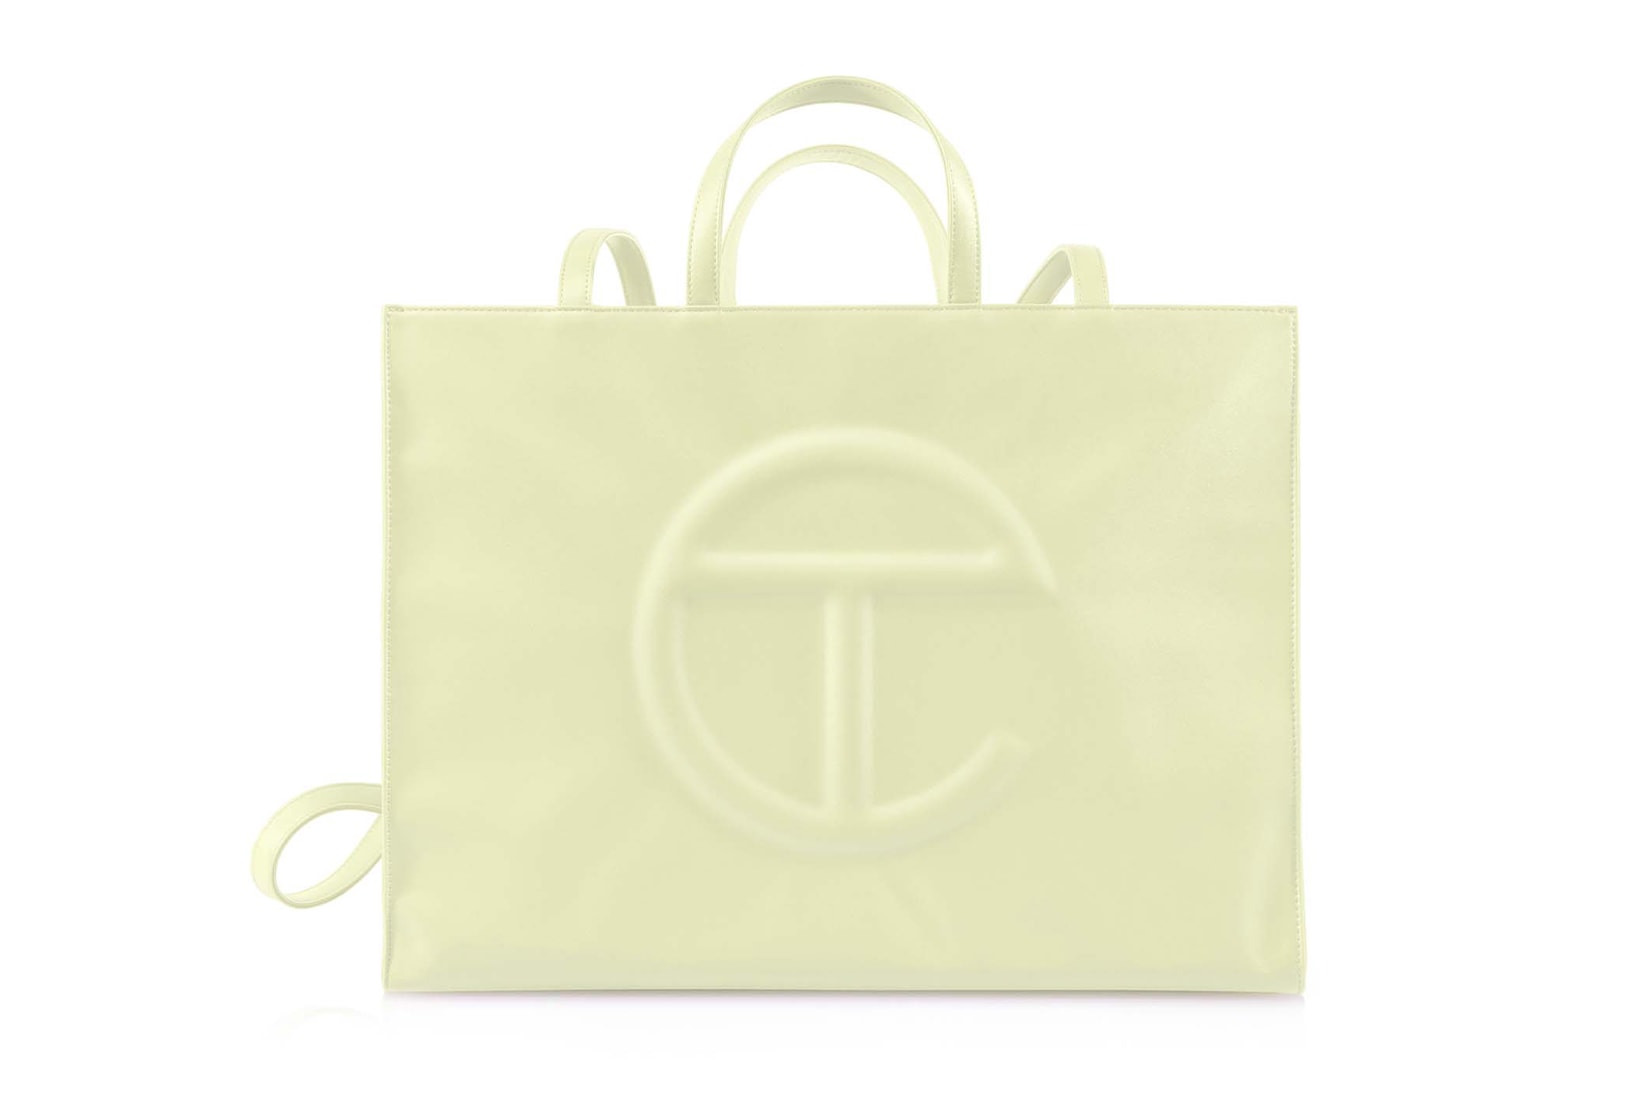 Telfar "Glue" Collection Shopping Bag